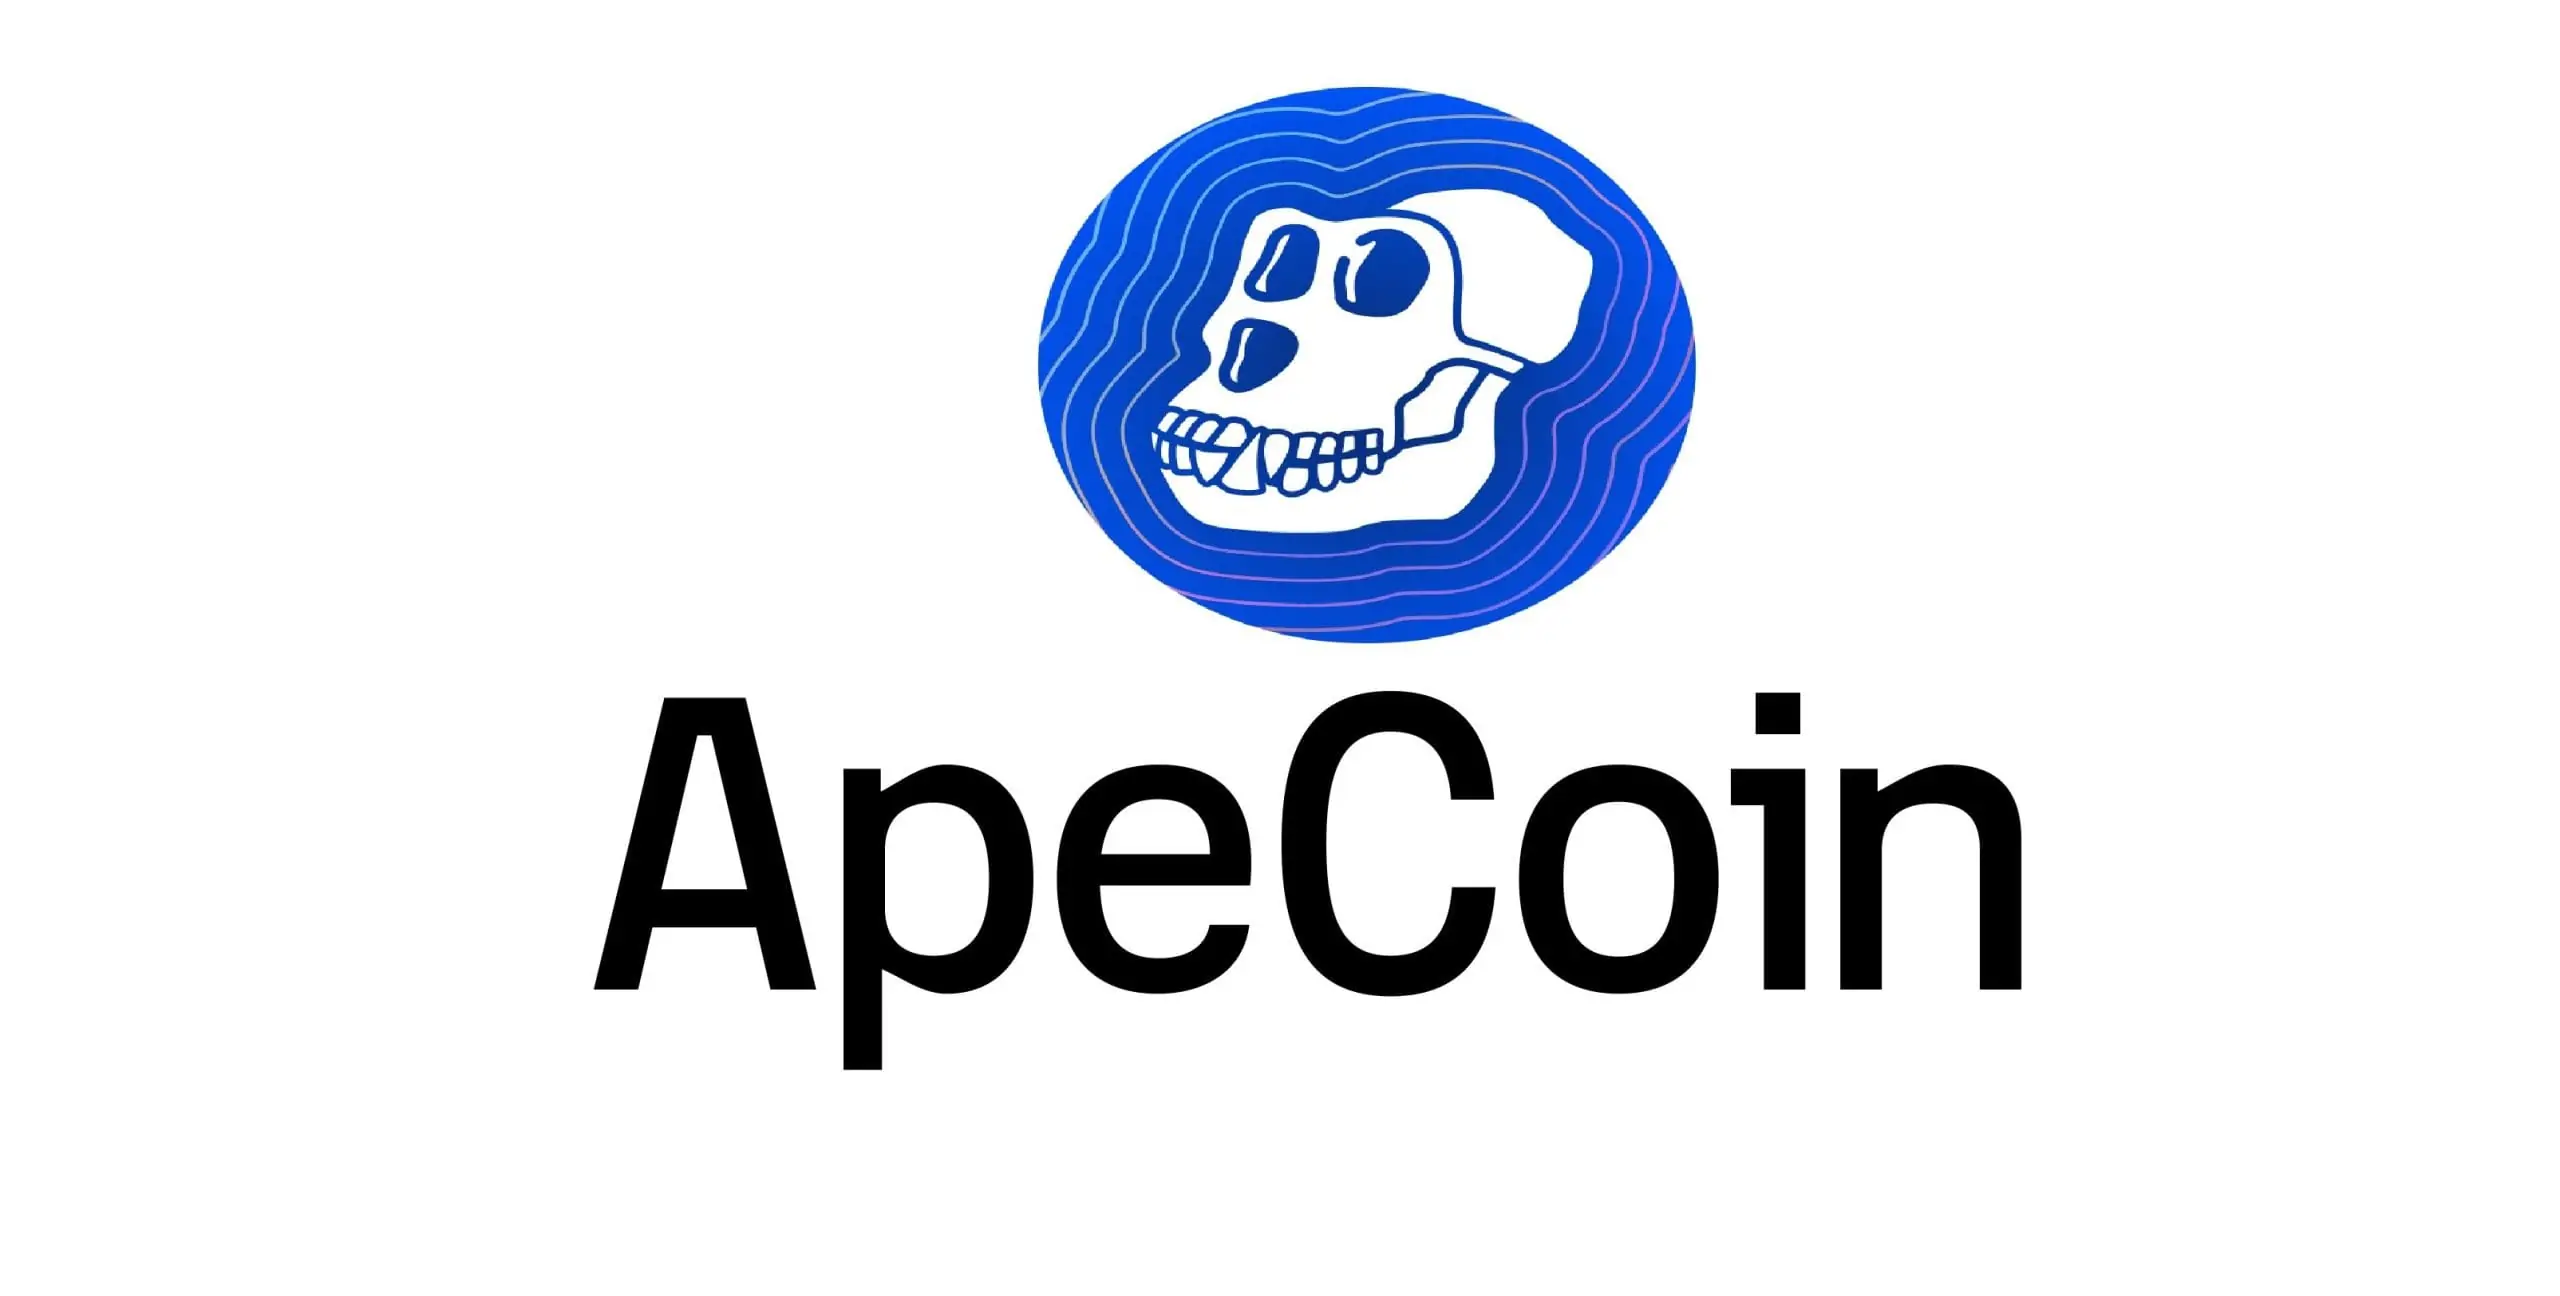 ApeCoin plummets after Metaverse NFT land sale